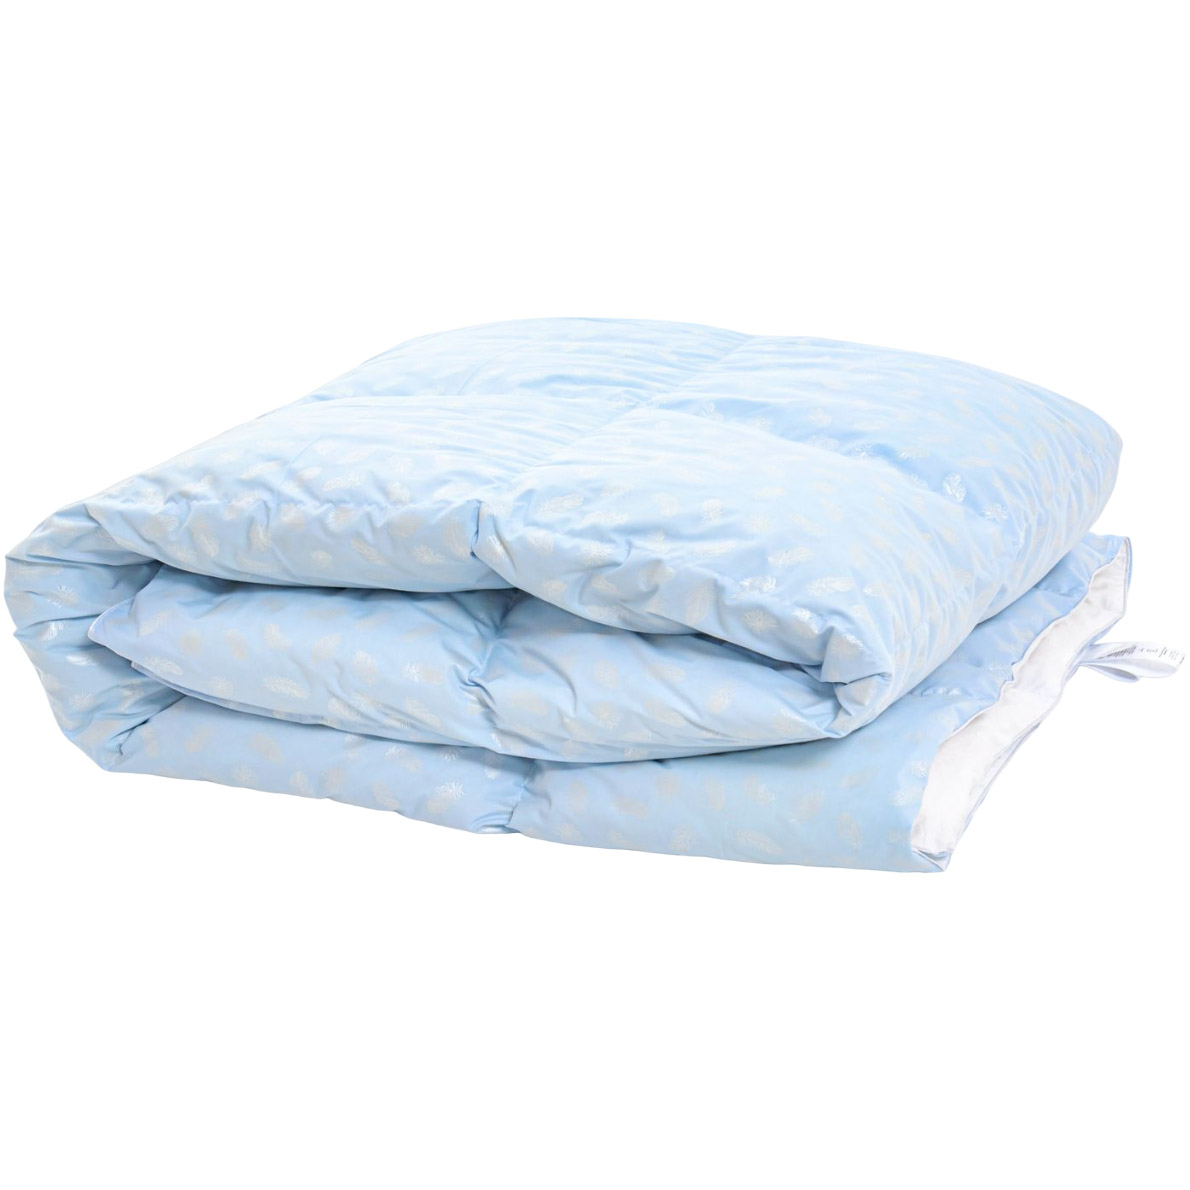 Одеяло пуховое MirSon Karmen №1846 Bio-Blue, 90% пух, полуторное, 215x155, голубое (2200003014105) - фото 1